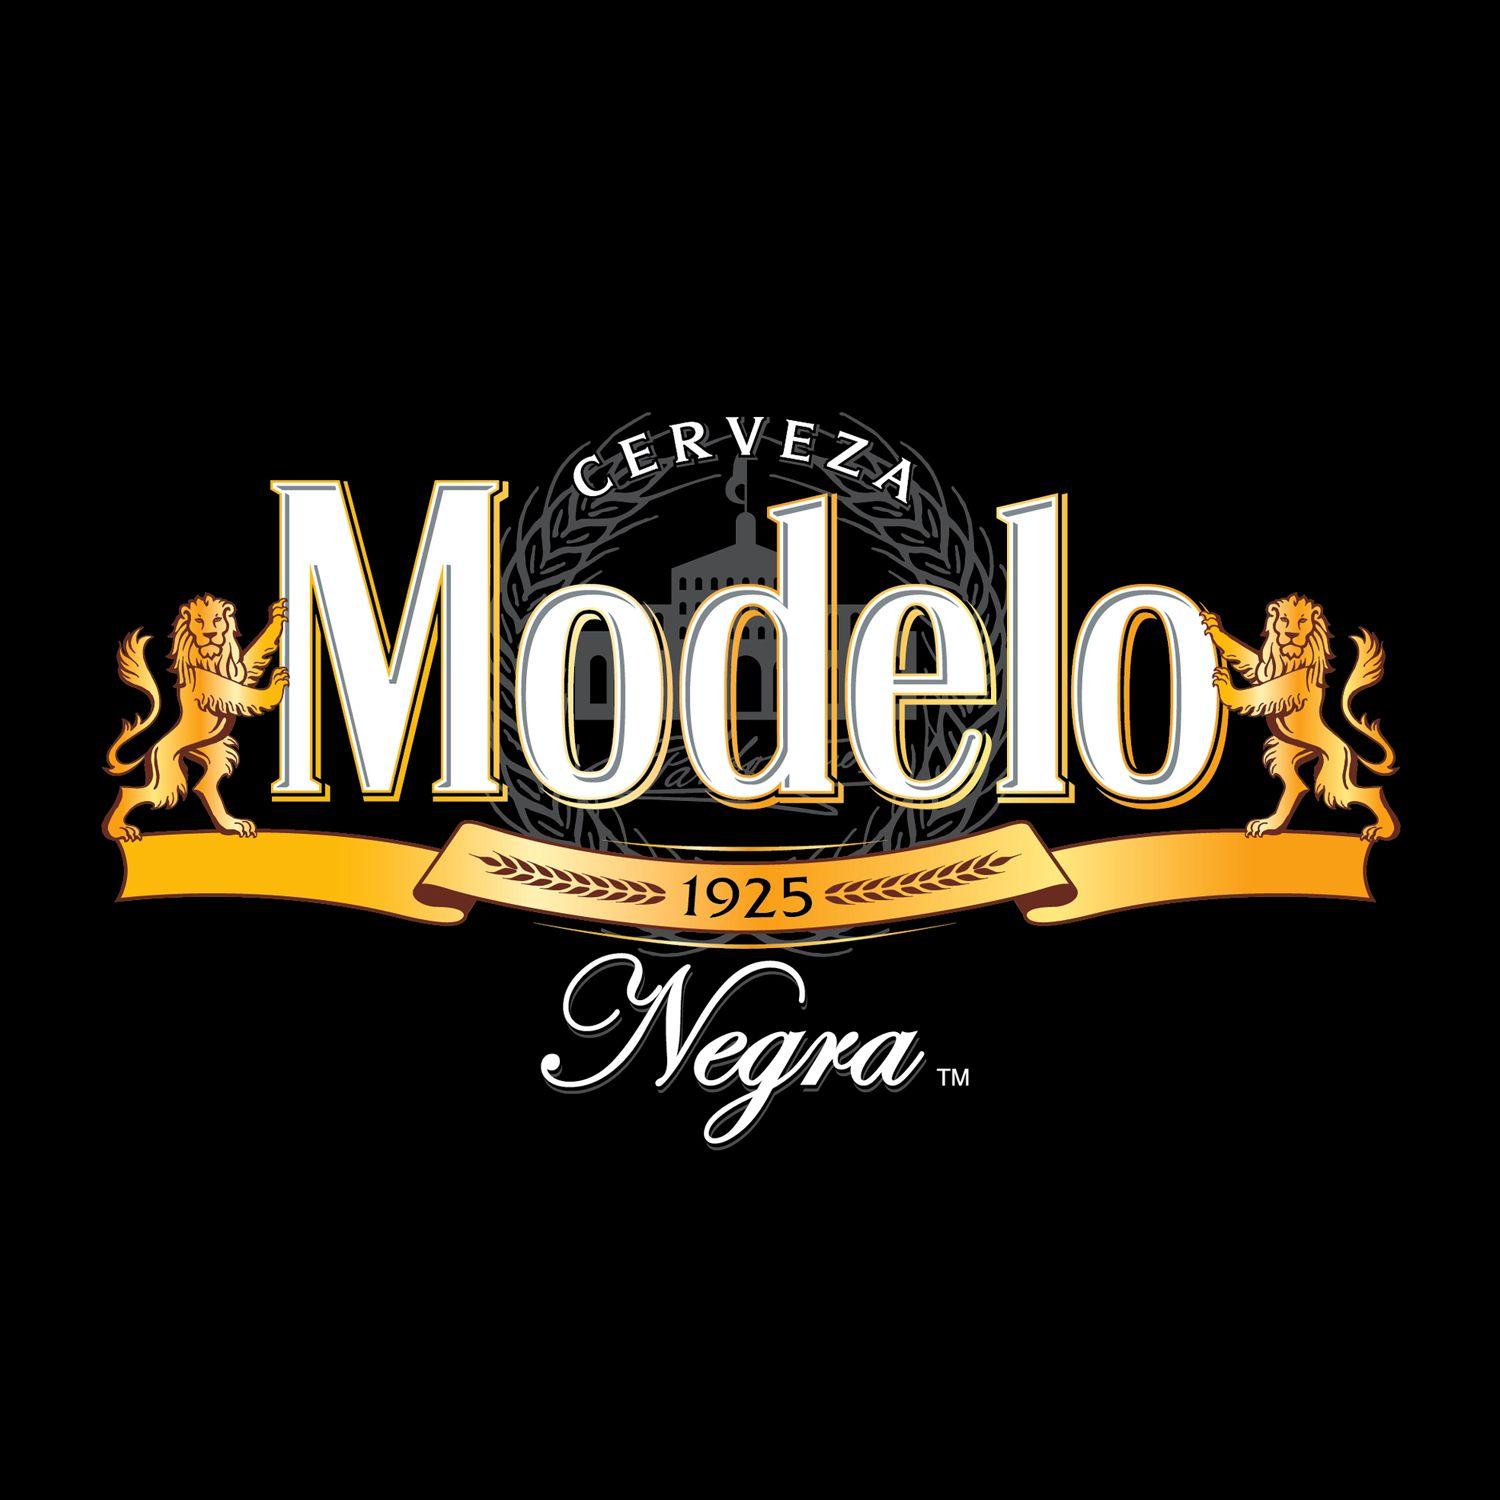 Modelo Logo - LOGOJET | Modelo Negra Logo